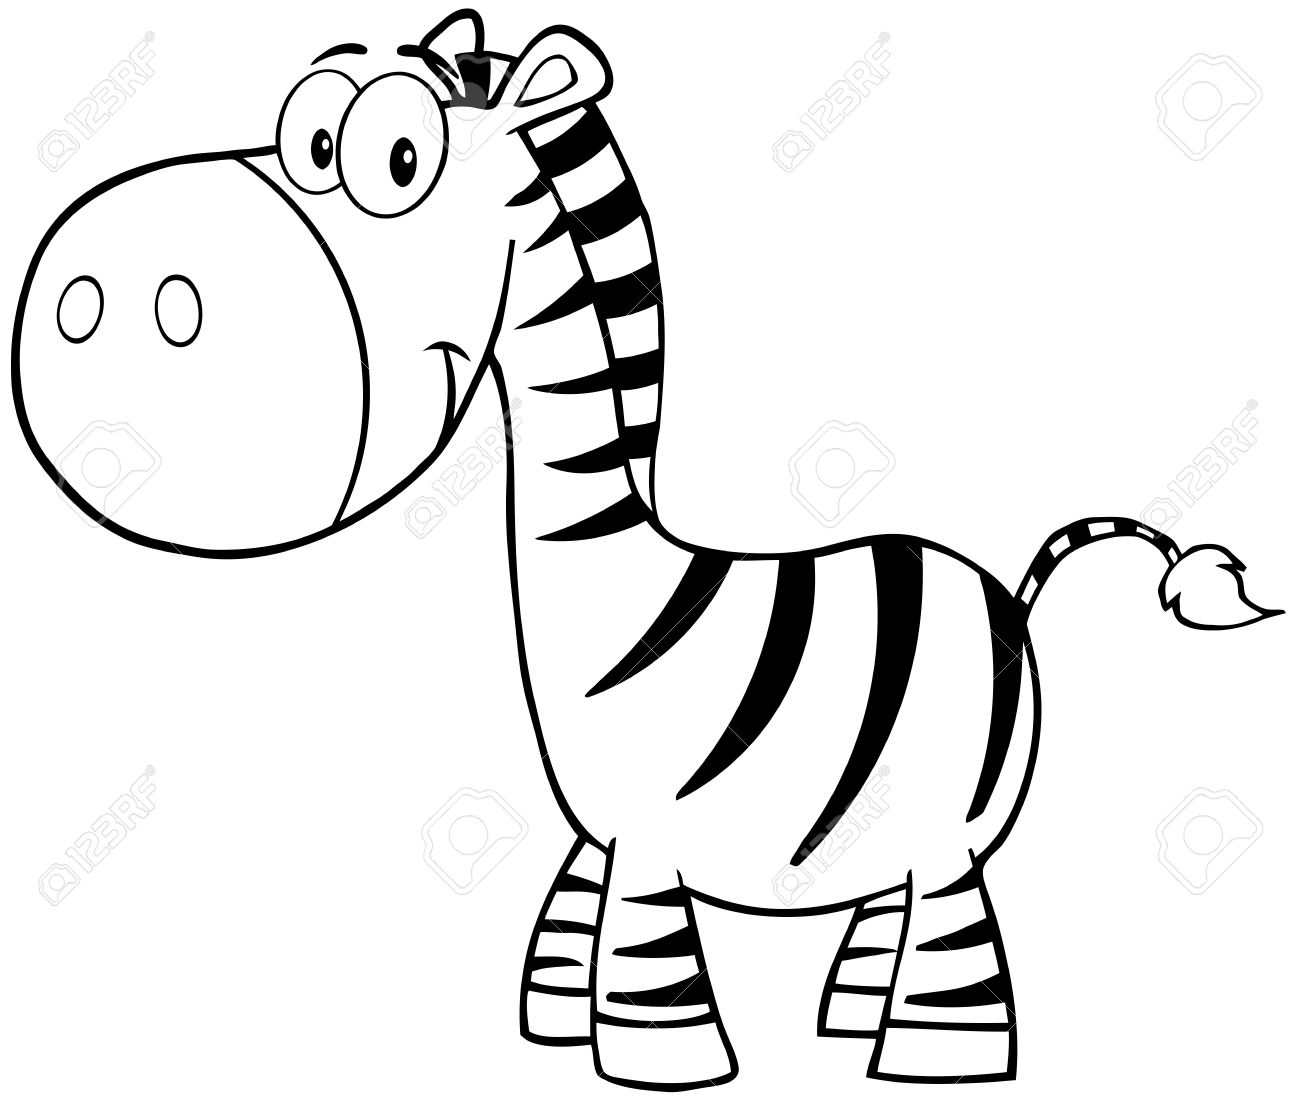 Zebra Black And White Clipart